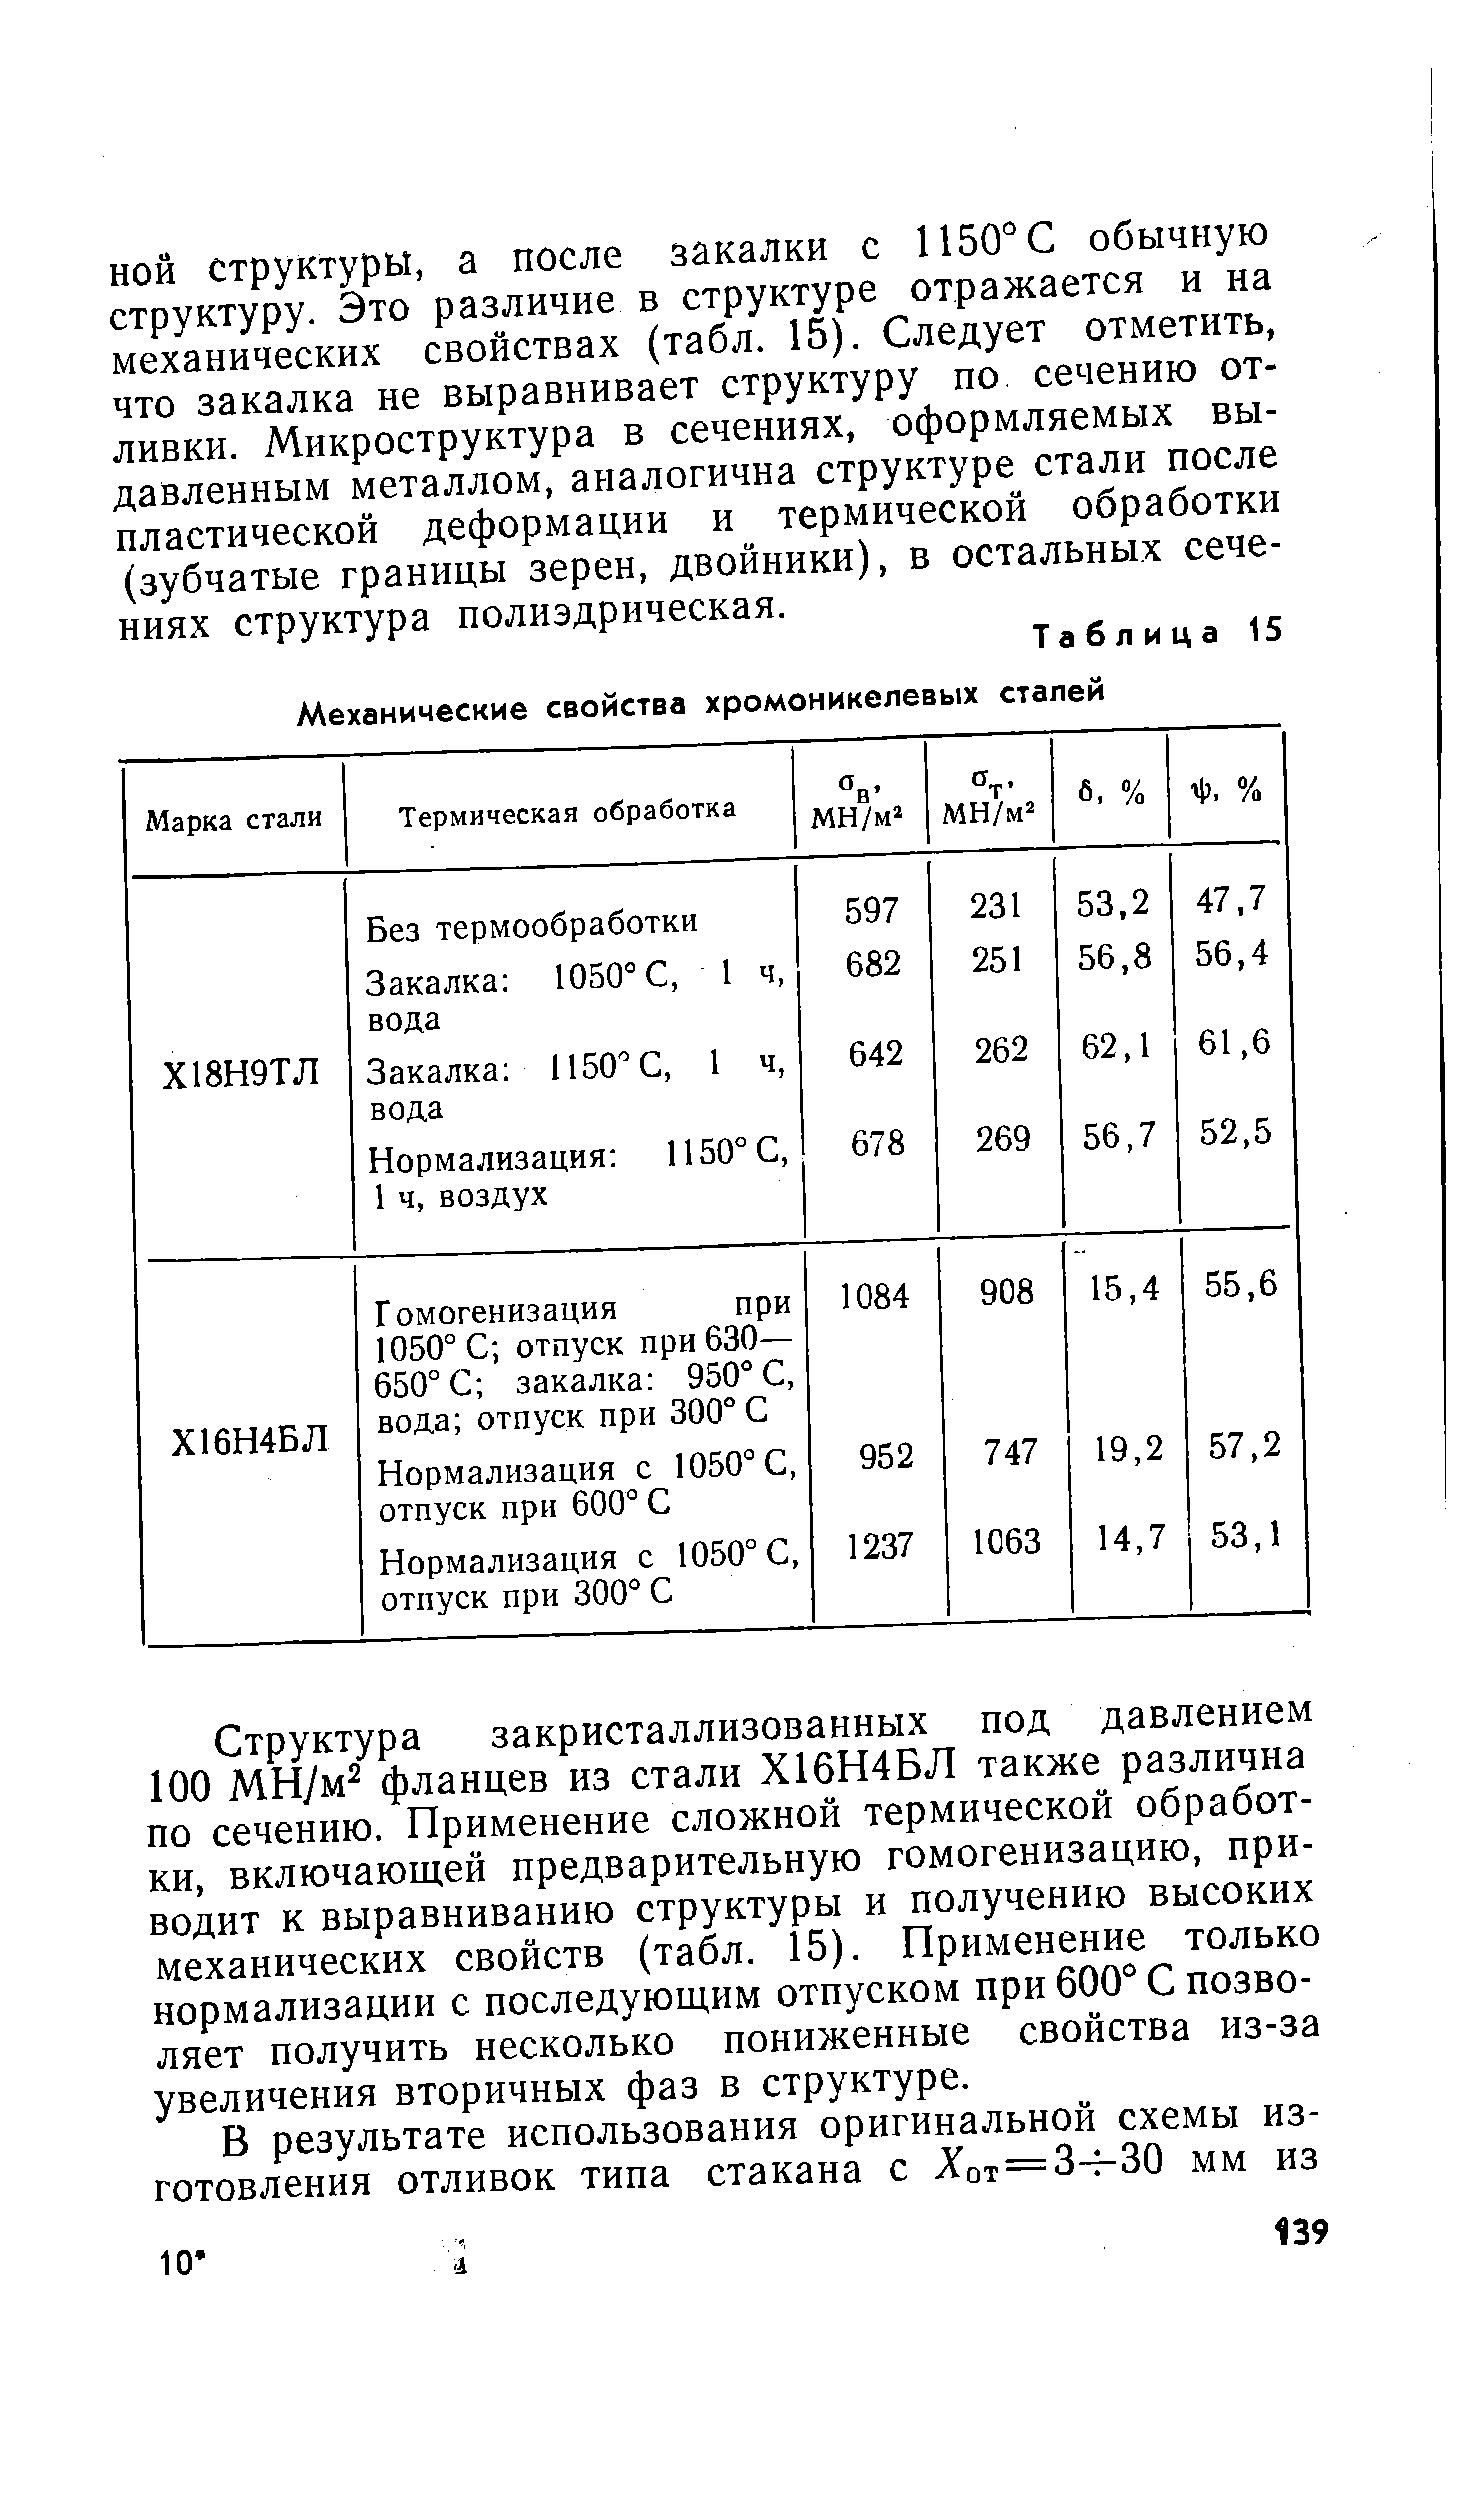 Таблица 15 <a href="/info/59050">Механические свойства хромоникелевых</a> сталей
